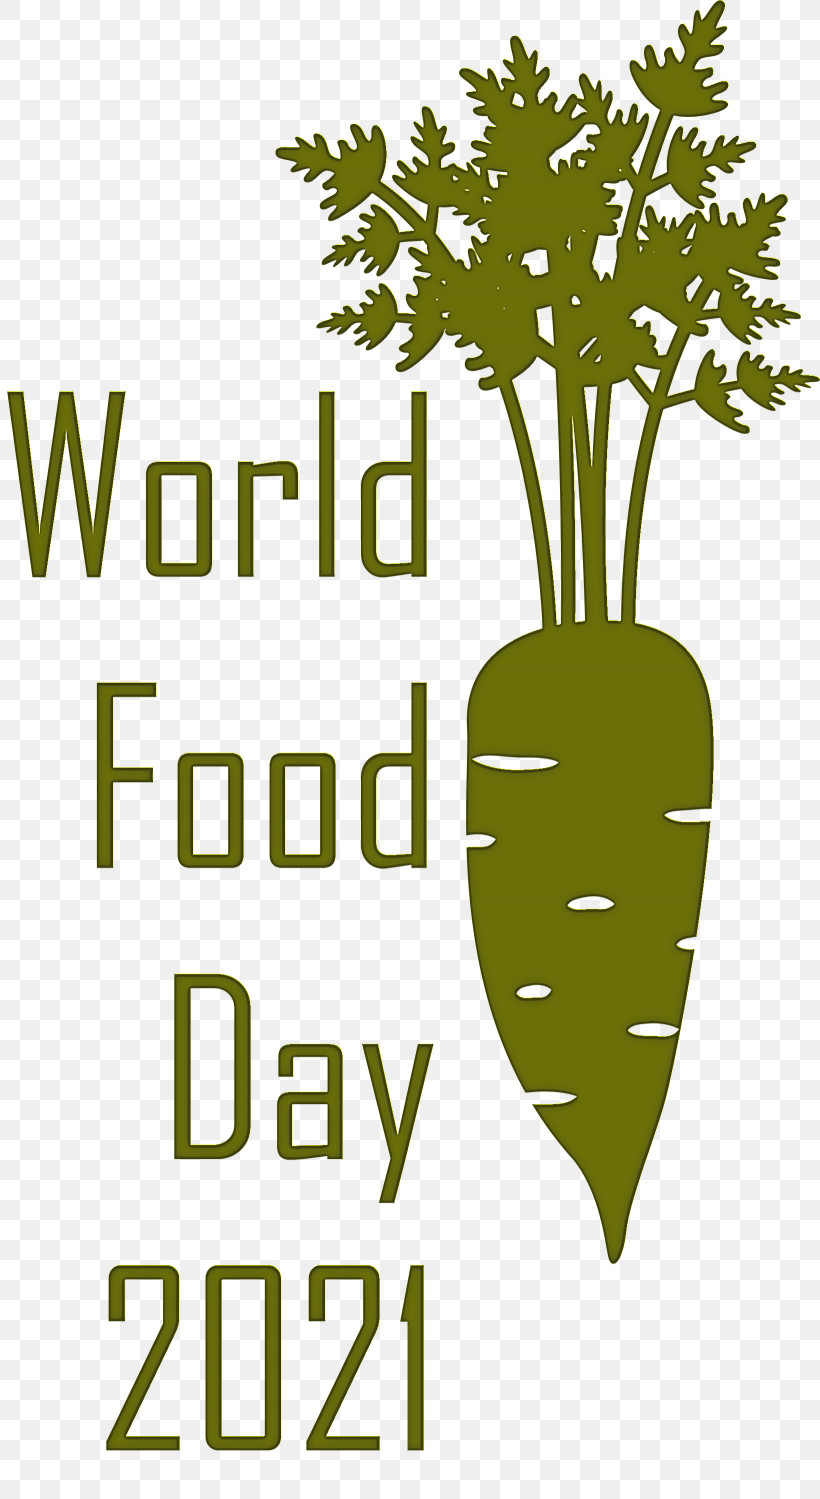 World Food Day Food Day, PNG, 1640x2999px, World Food Day, Food Day, Green, Leaf, Leaf Vegetable Download Free